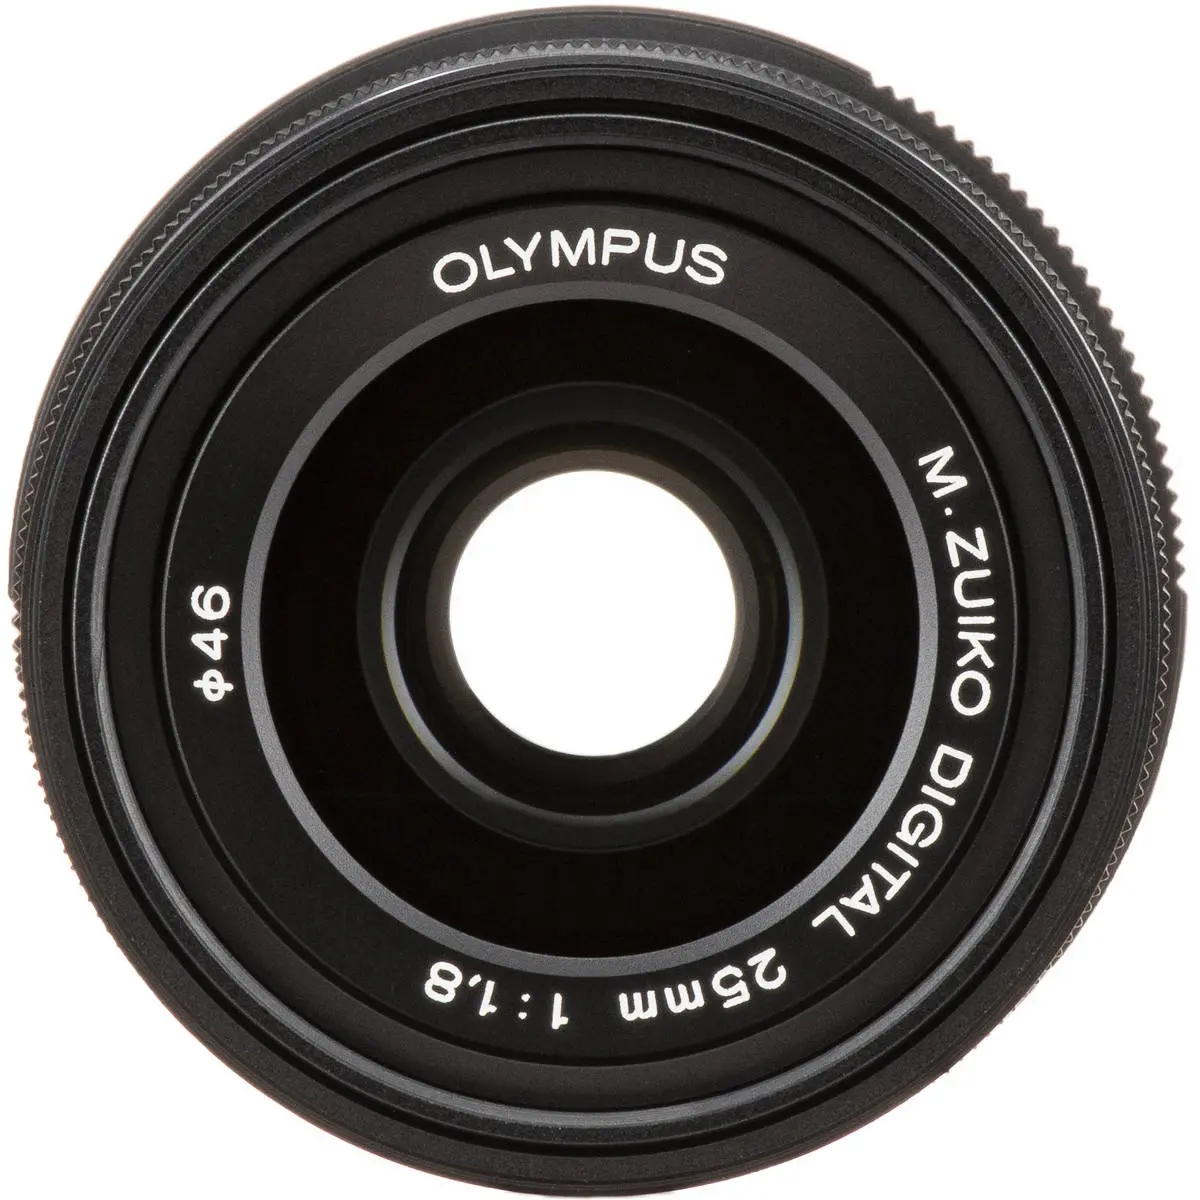 2. Olympus M.ZUIKO DIGITAL 25mm F1.8 (Black)